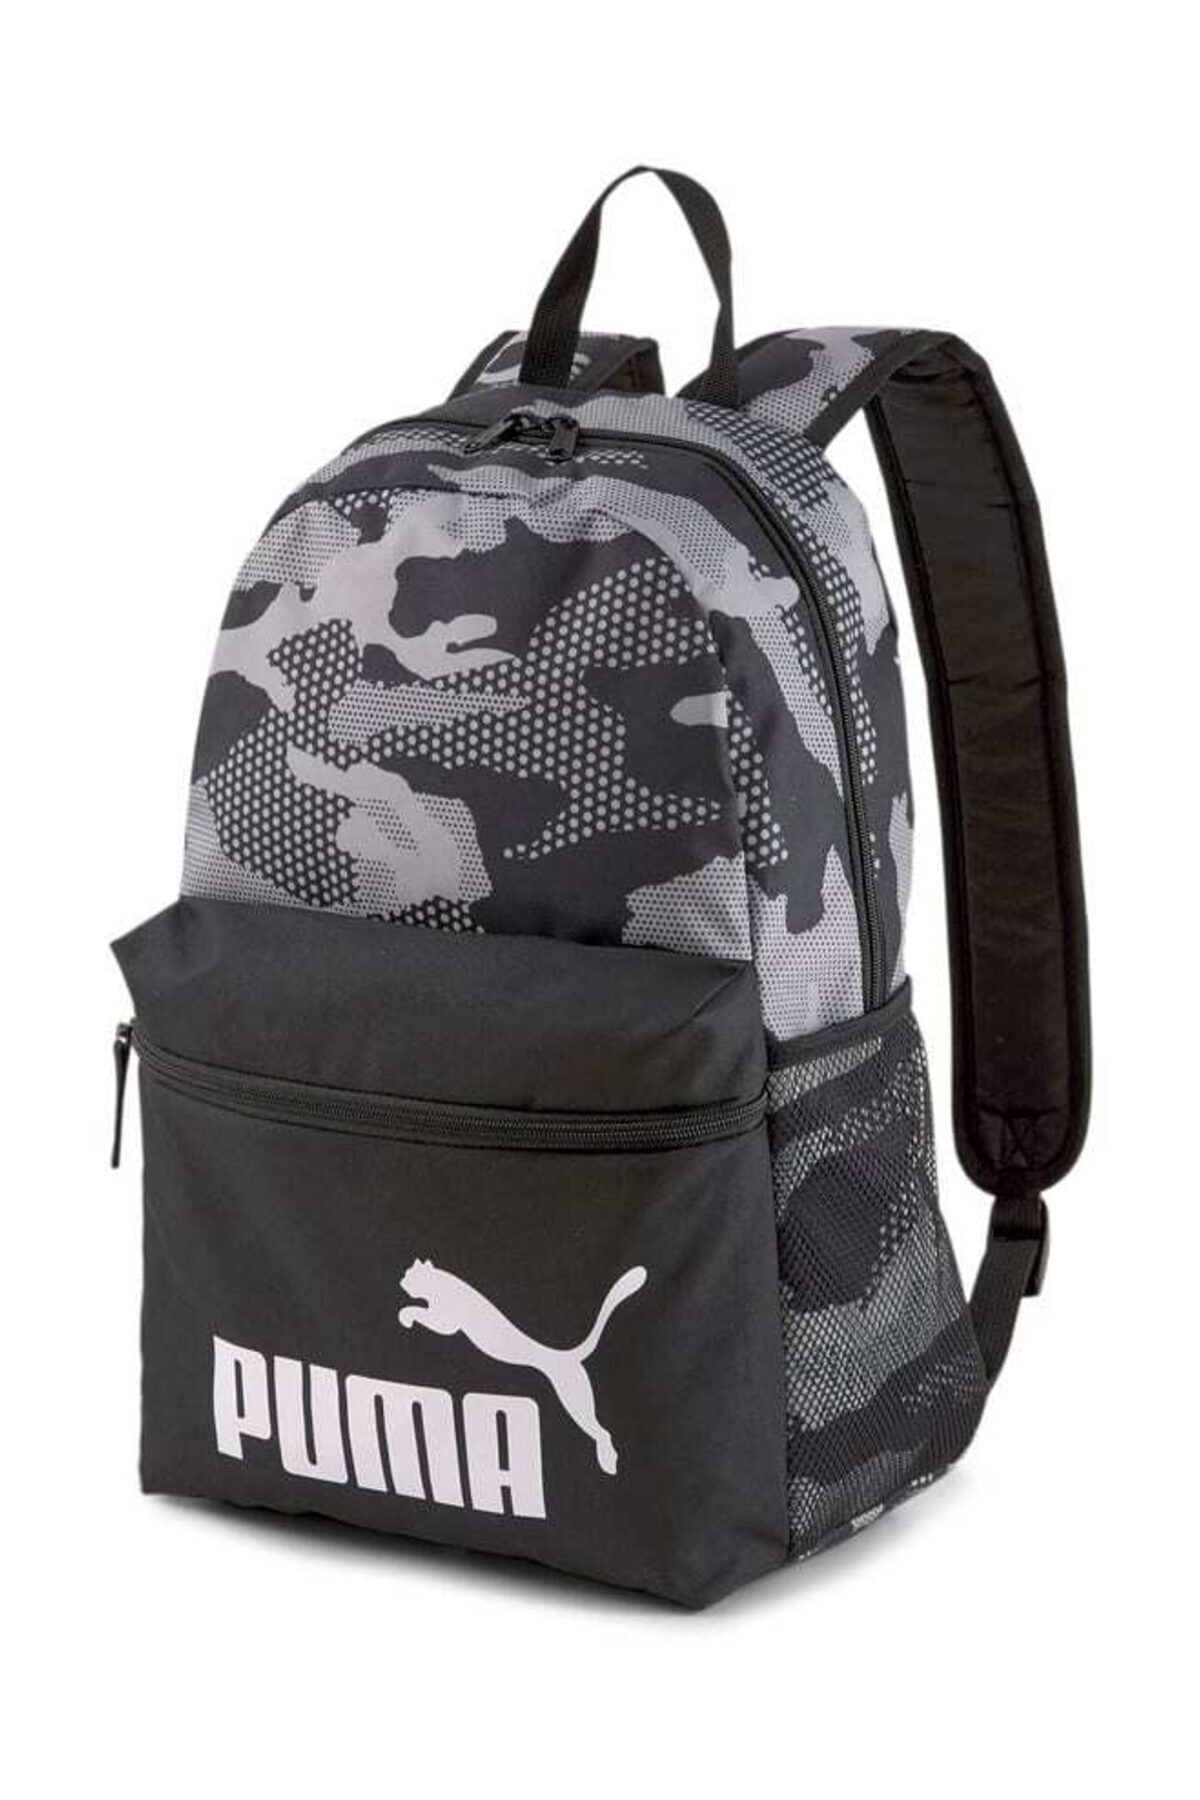 کوله پشتی پوما اصل چریکی توسی Puma